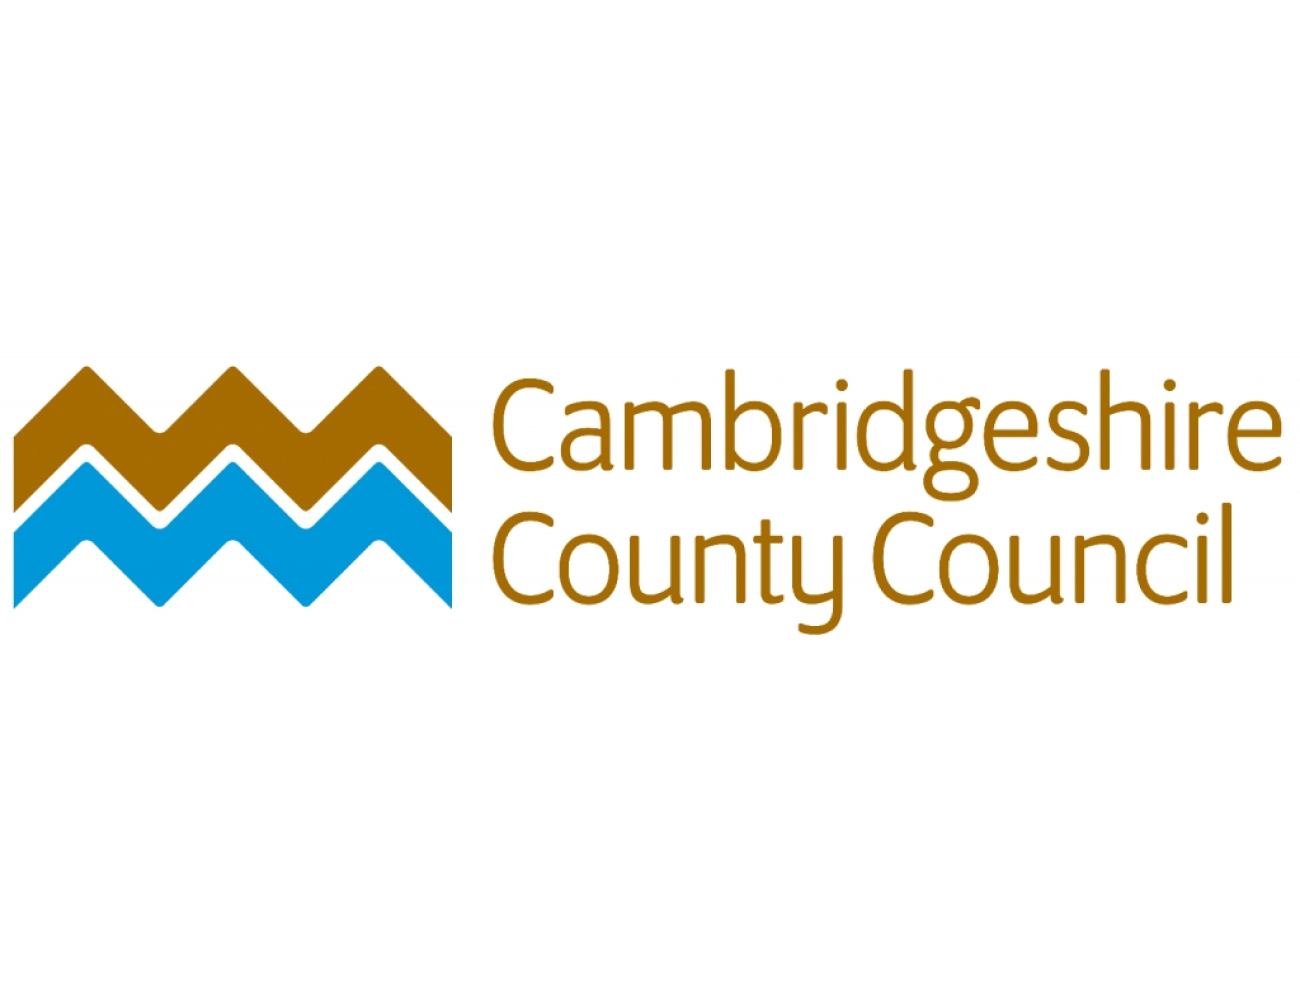 Cambridgeshire county council logo